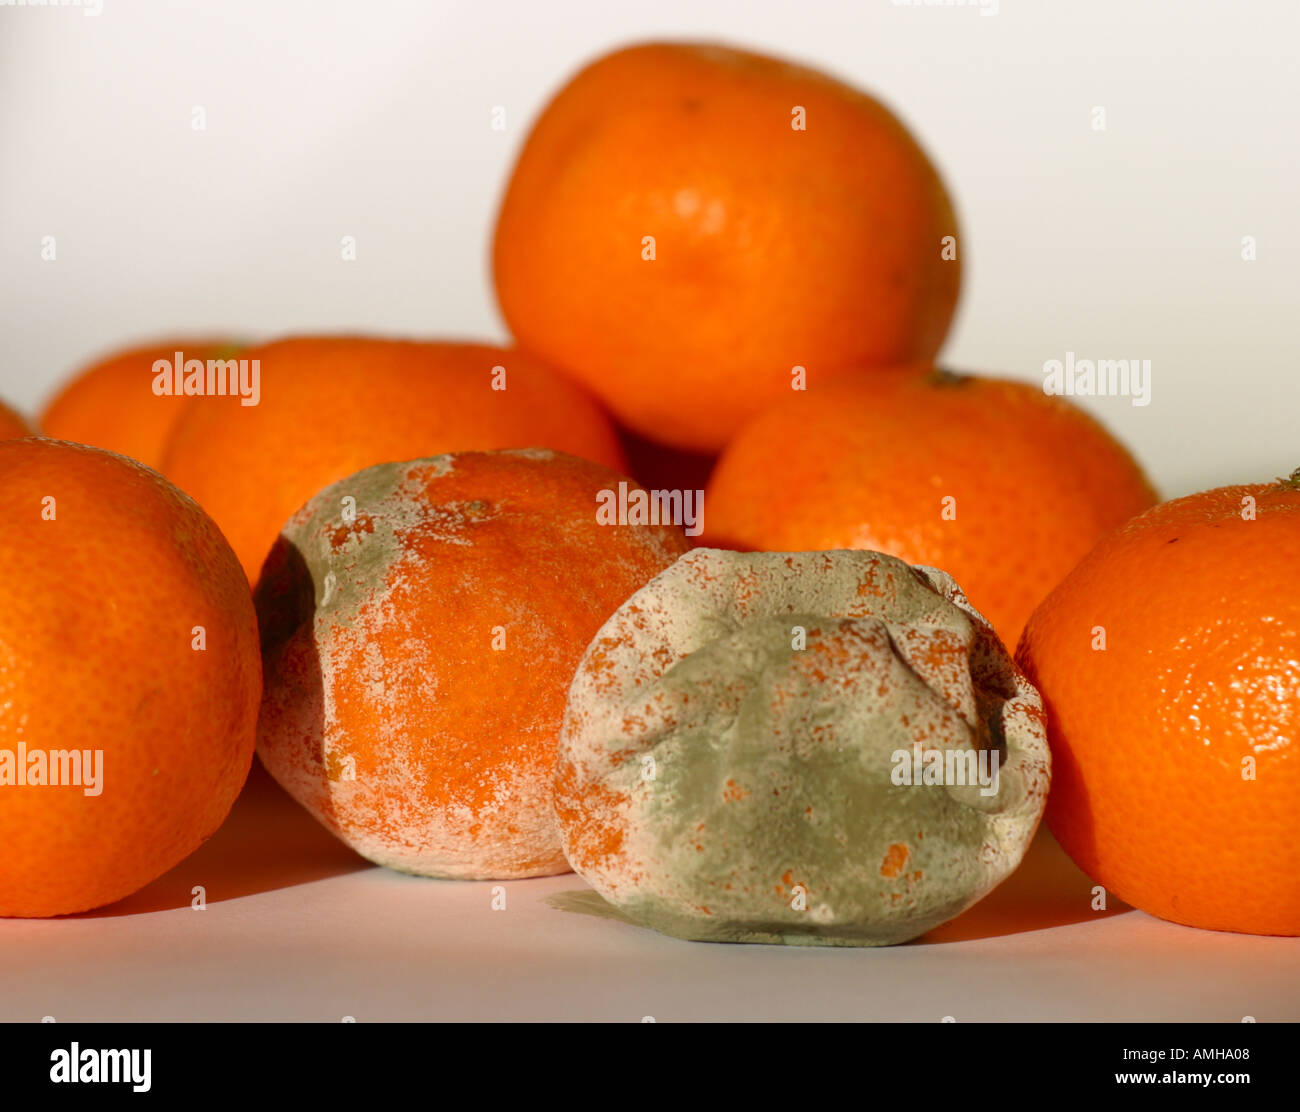 Fresh satsuma mandarin orange fruit going off mouldy bad Stock Photo